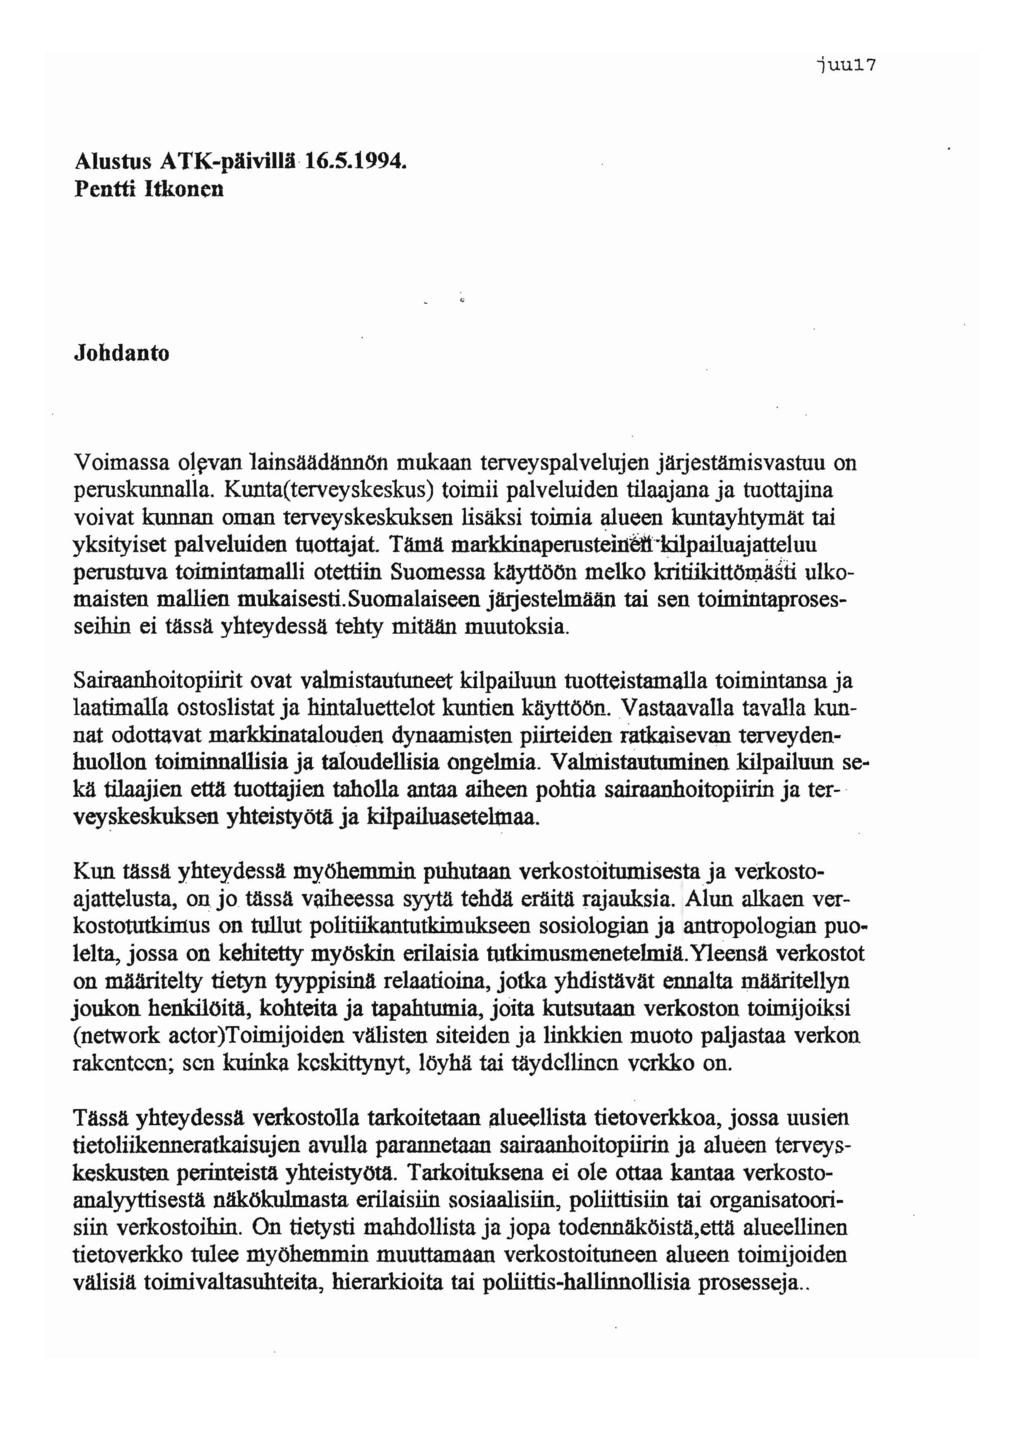 luu17 Alustus ATK-päivillä 16.5.1994. Pentti Itkonen Johdanto Voimassa ol~van lainsäädännön mukaan terveyspalvelujen jarjestamisvastuu on peruskunnalla.